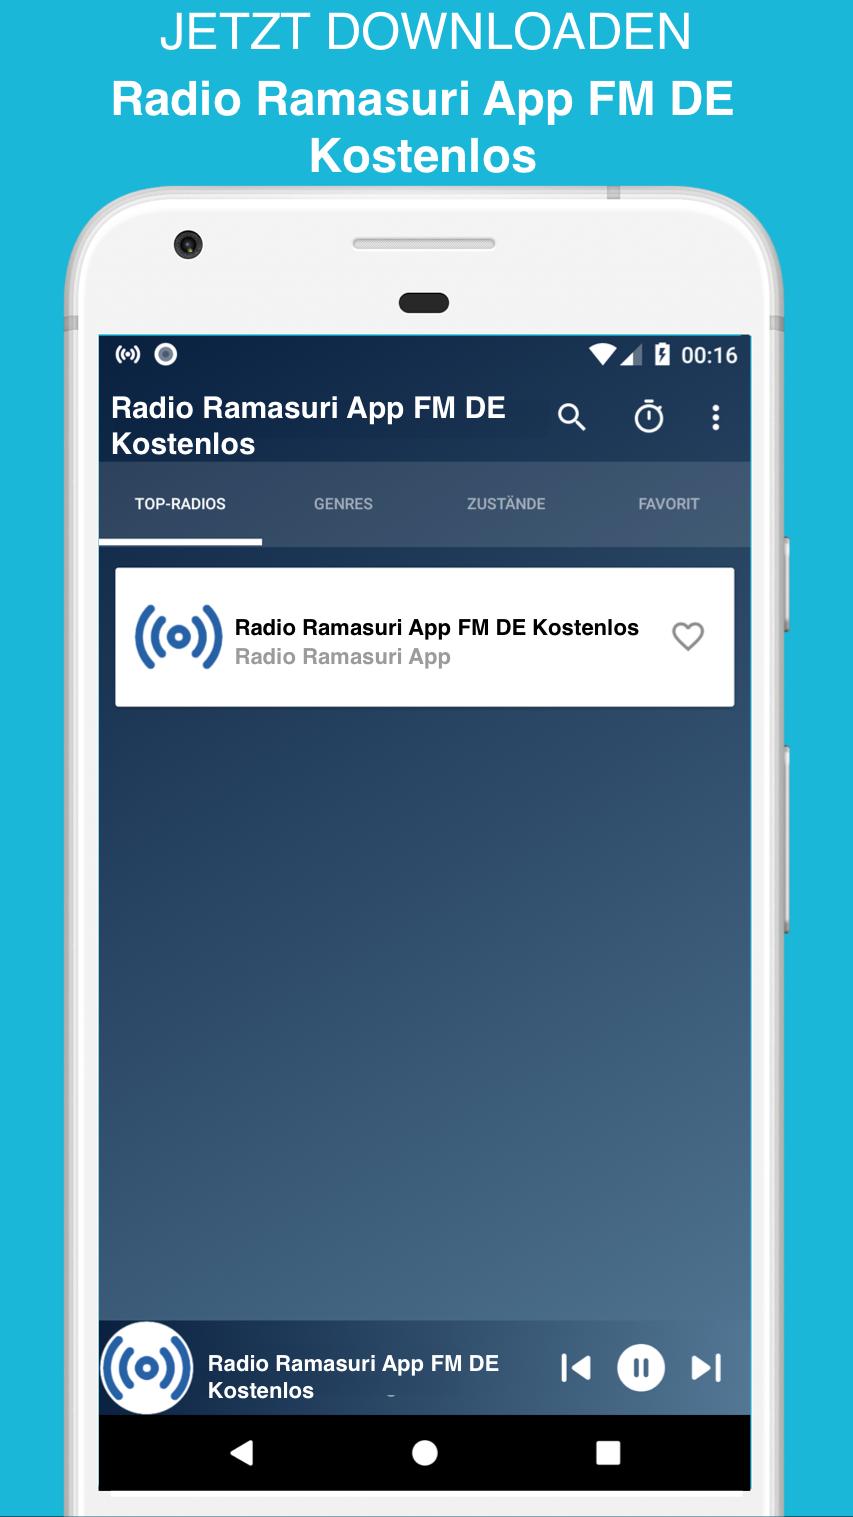 Radio Ramasuri App FM DE Kostenlos for Android - APK Download